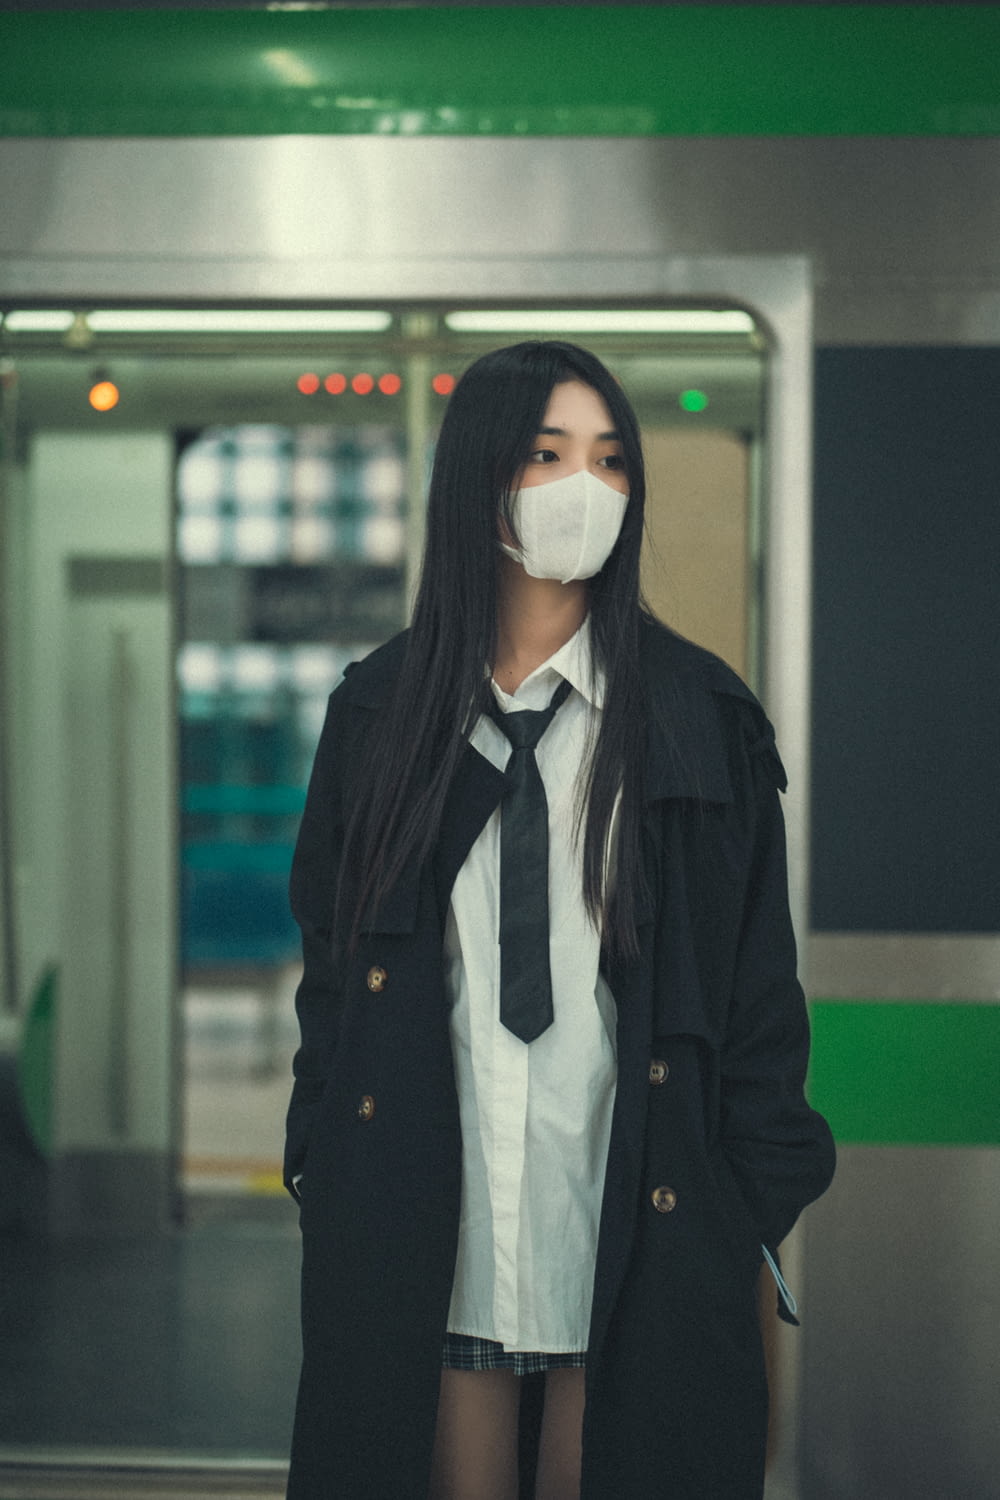 Una donna che indossa una maschera facciale in piedi in una stazione della metropolitana